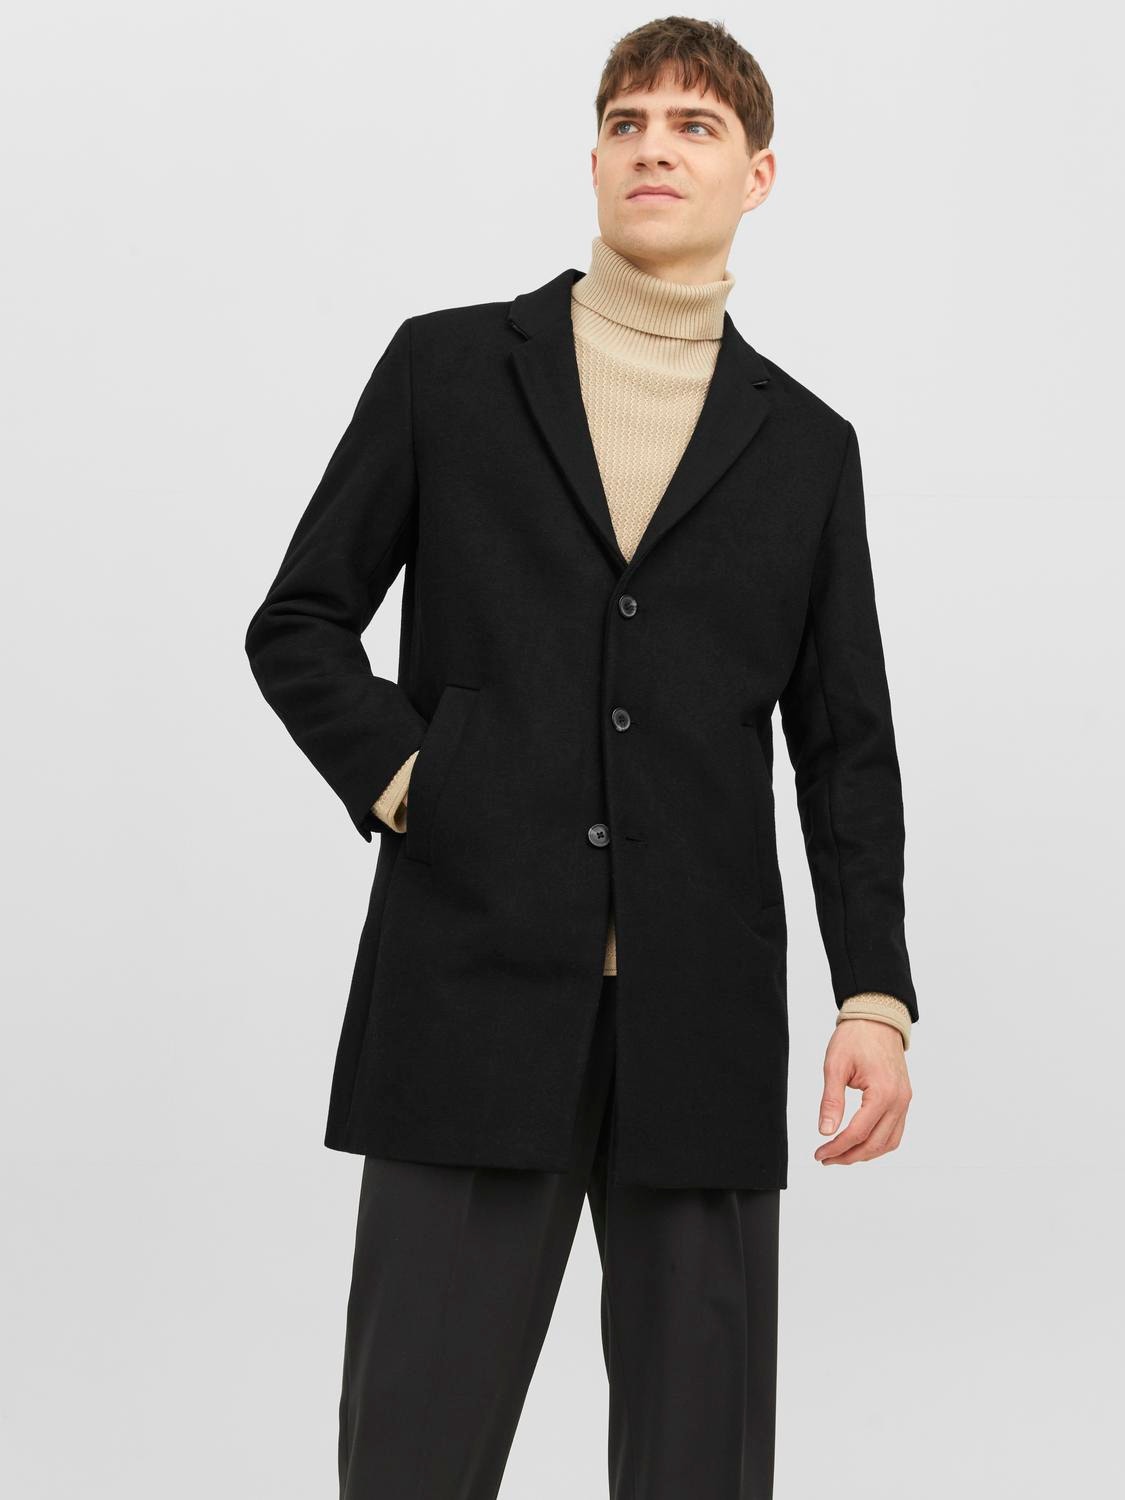 Coat with 50% discount! | Jack & Jones®